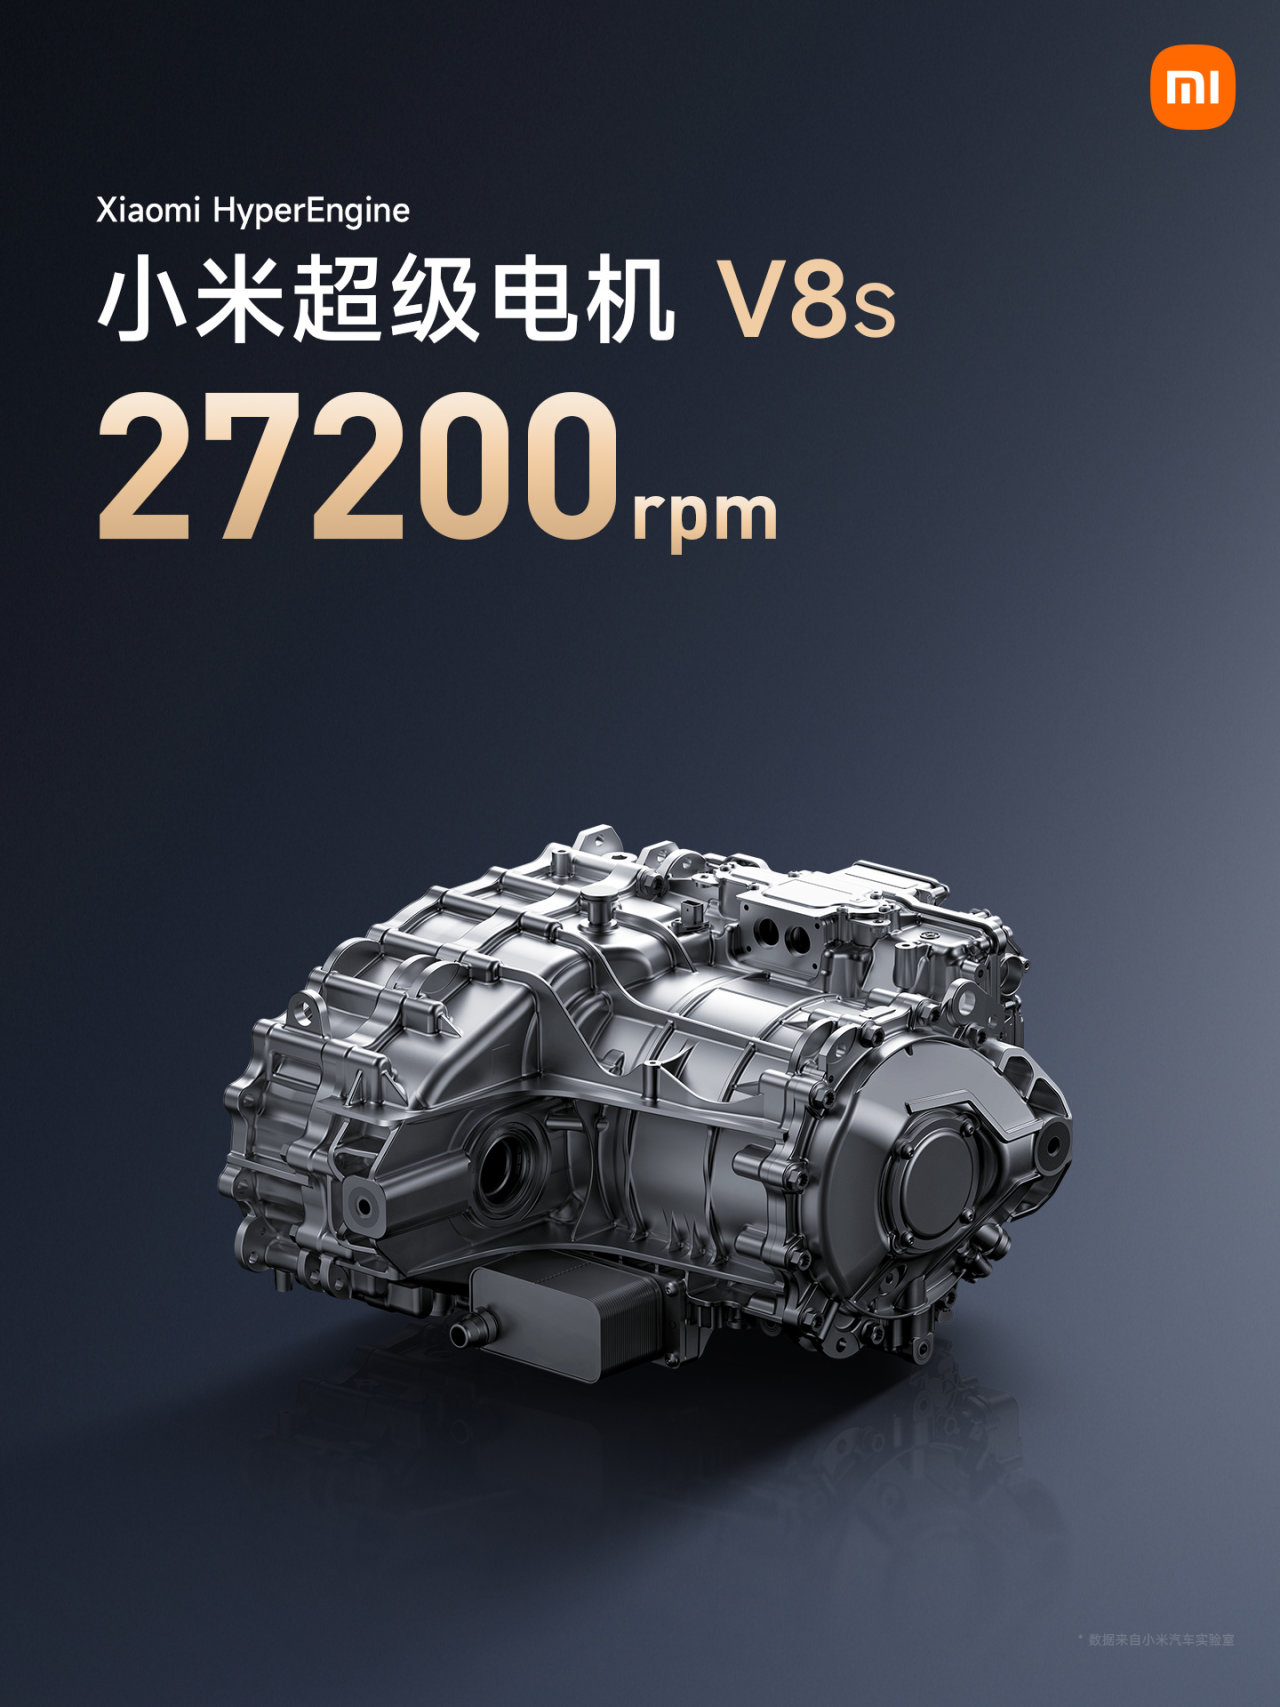 【爱车基地】雷军透露小米自研电机 V8s 年底上车，27200rpm 转速业内第一